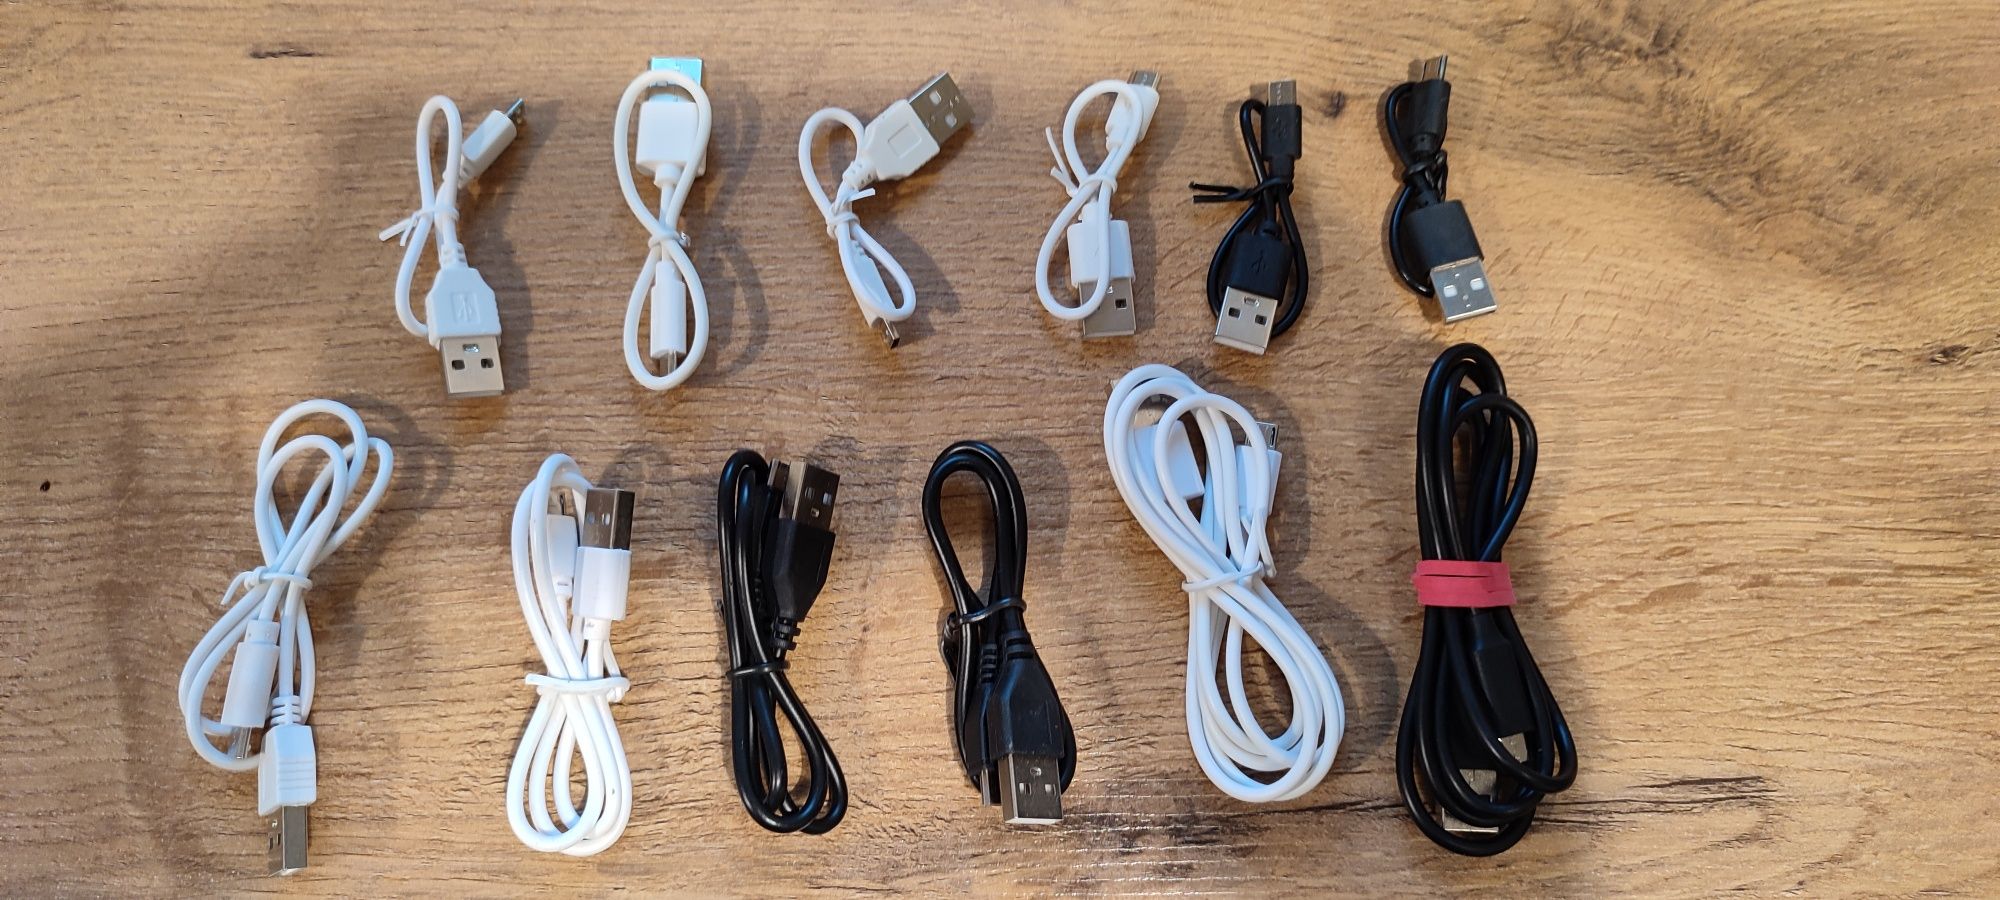 Kable USB nowe różne długości 8szt czarny i bialy